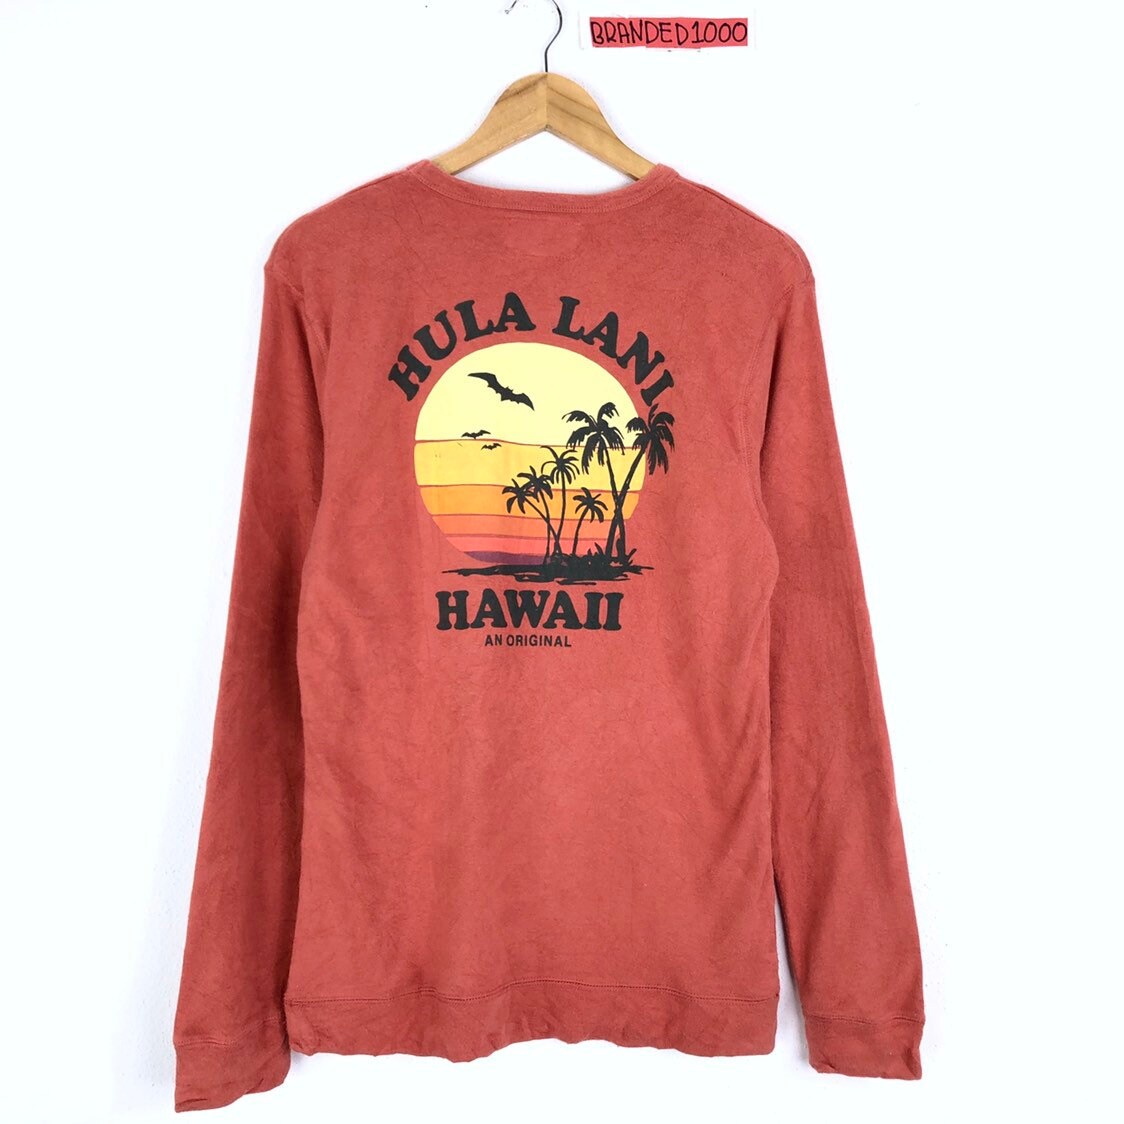 PICK! Vintage 90s Hawaii Hula Lani Surf Sweater Crewneck Surf Hawaii Hula Lani Sweatshirt Size L